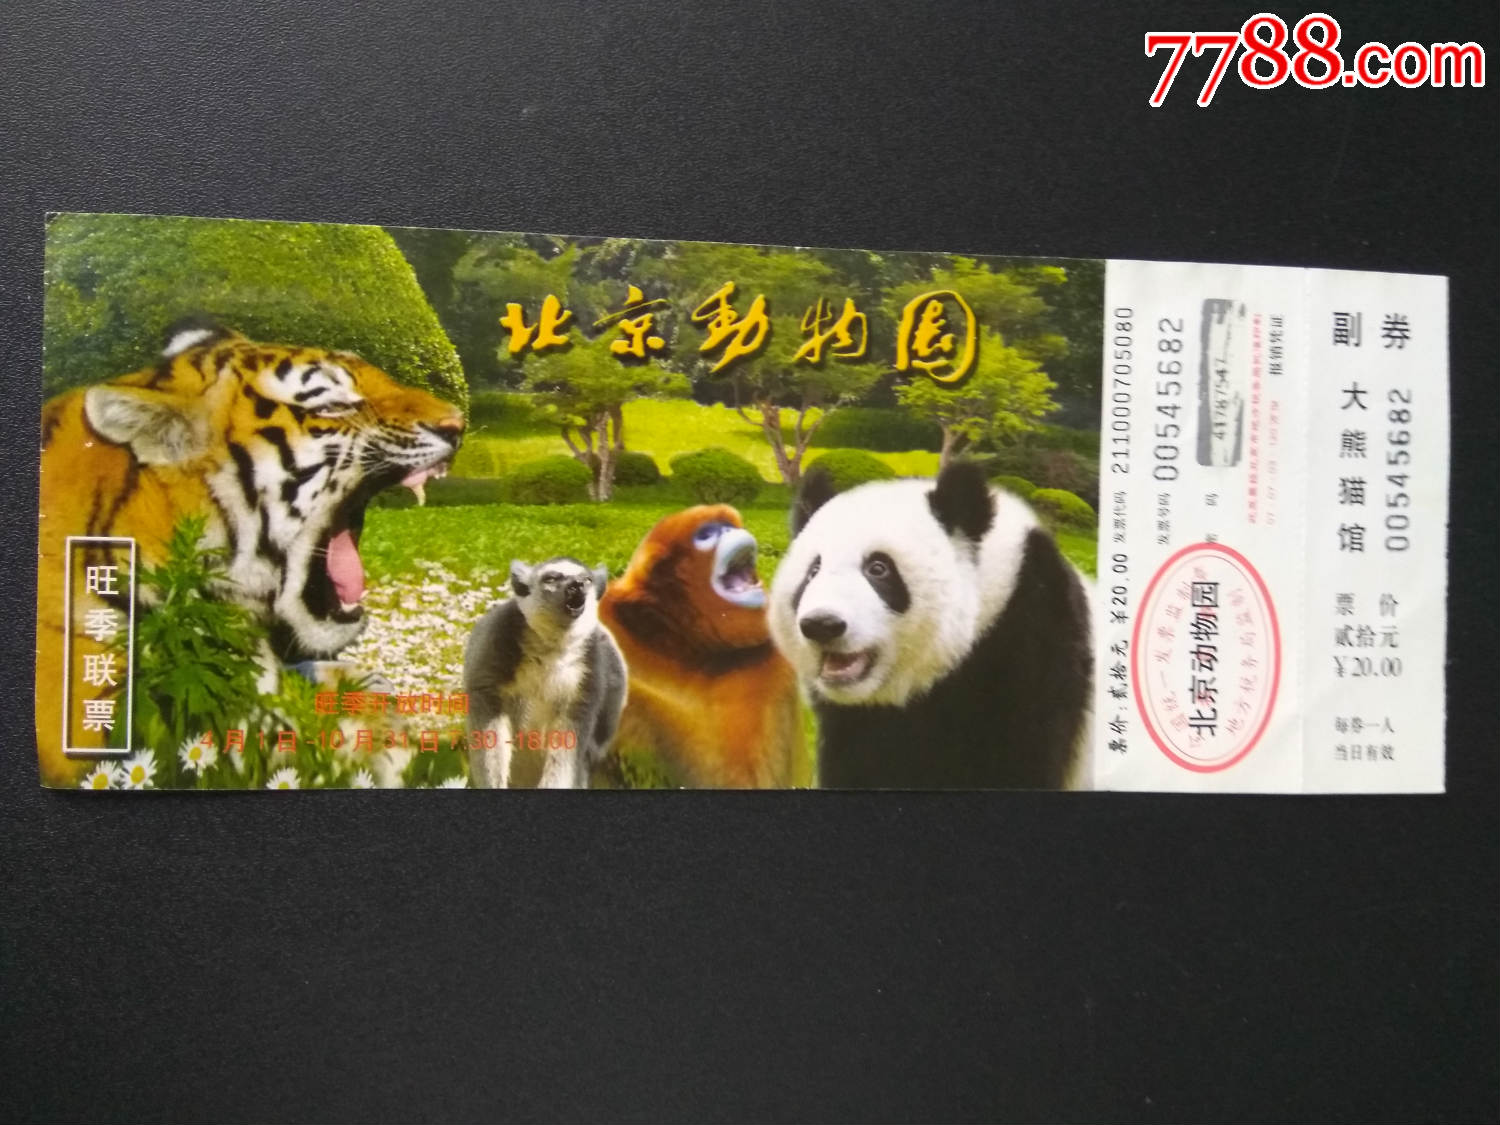 入场券(北京动物园--)熊猫图;完整有副券